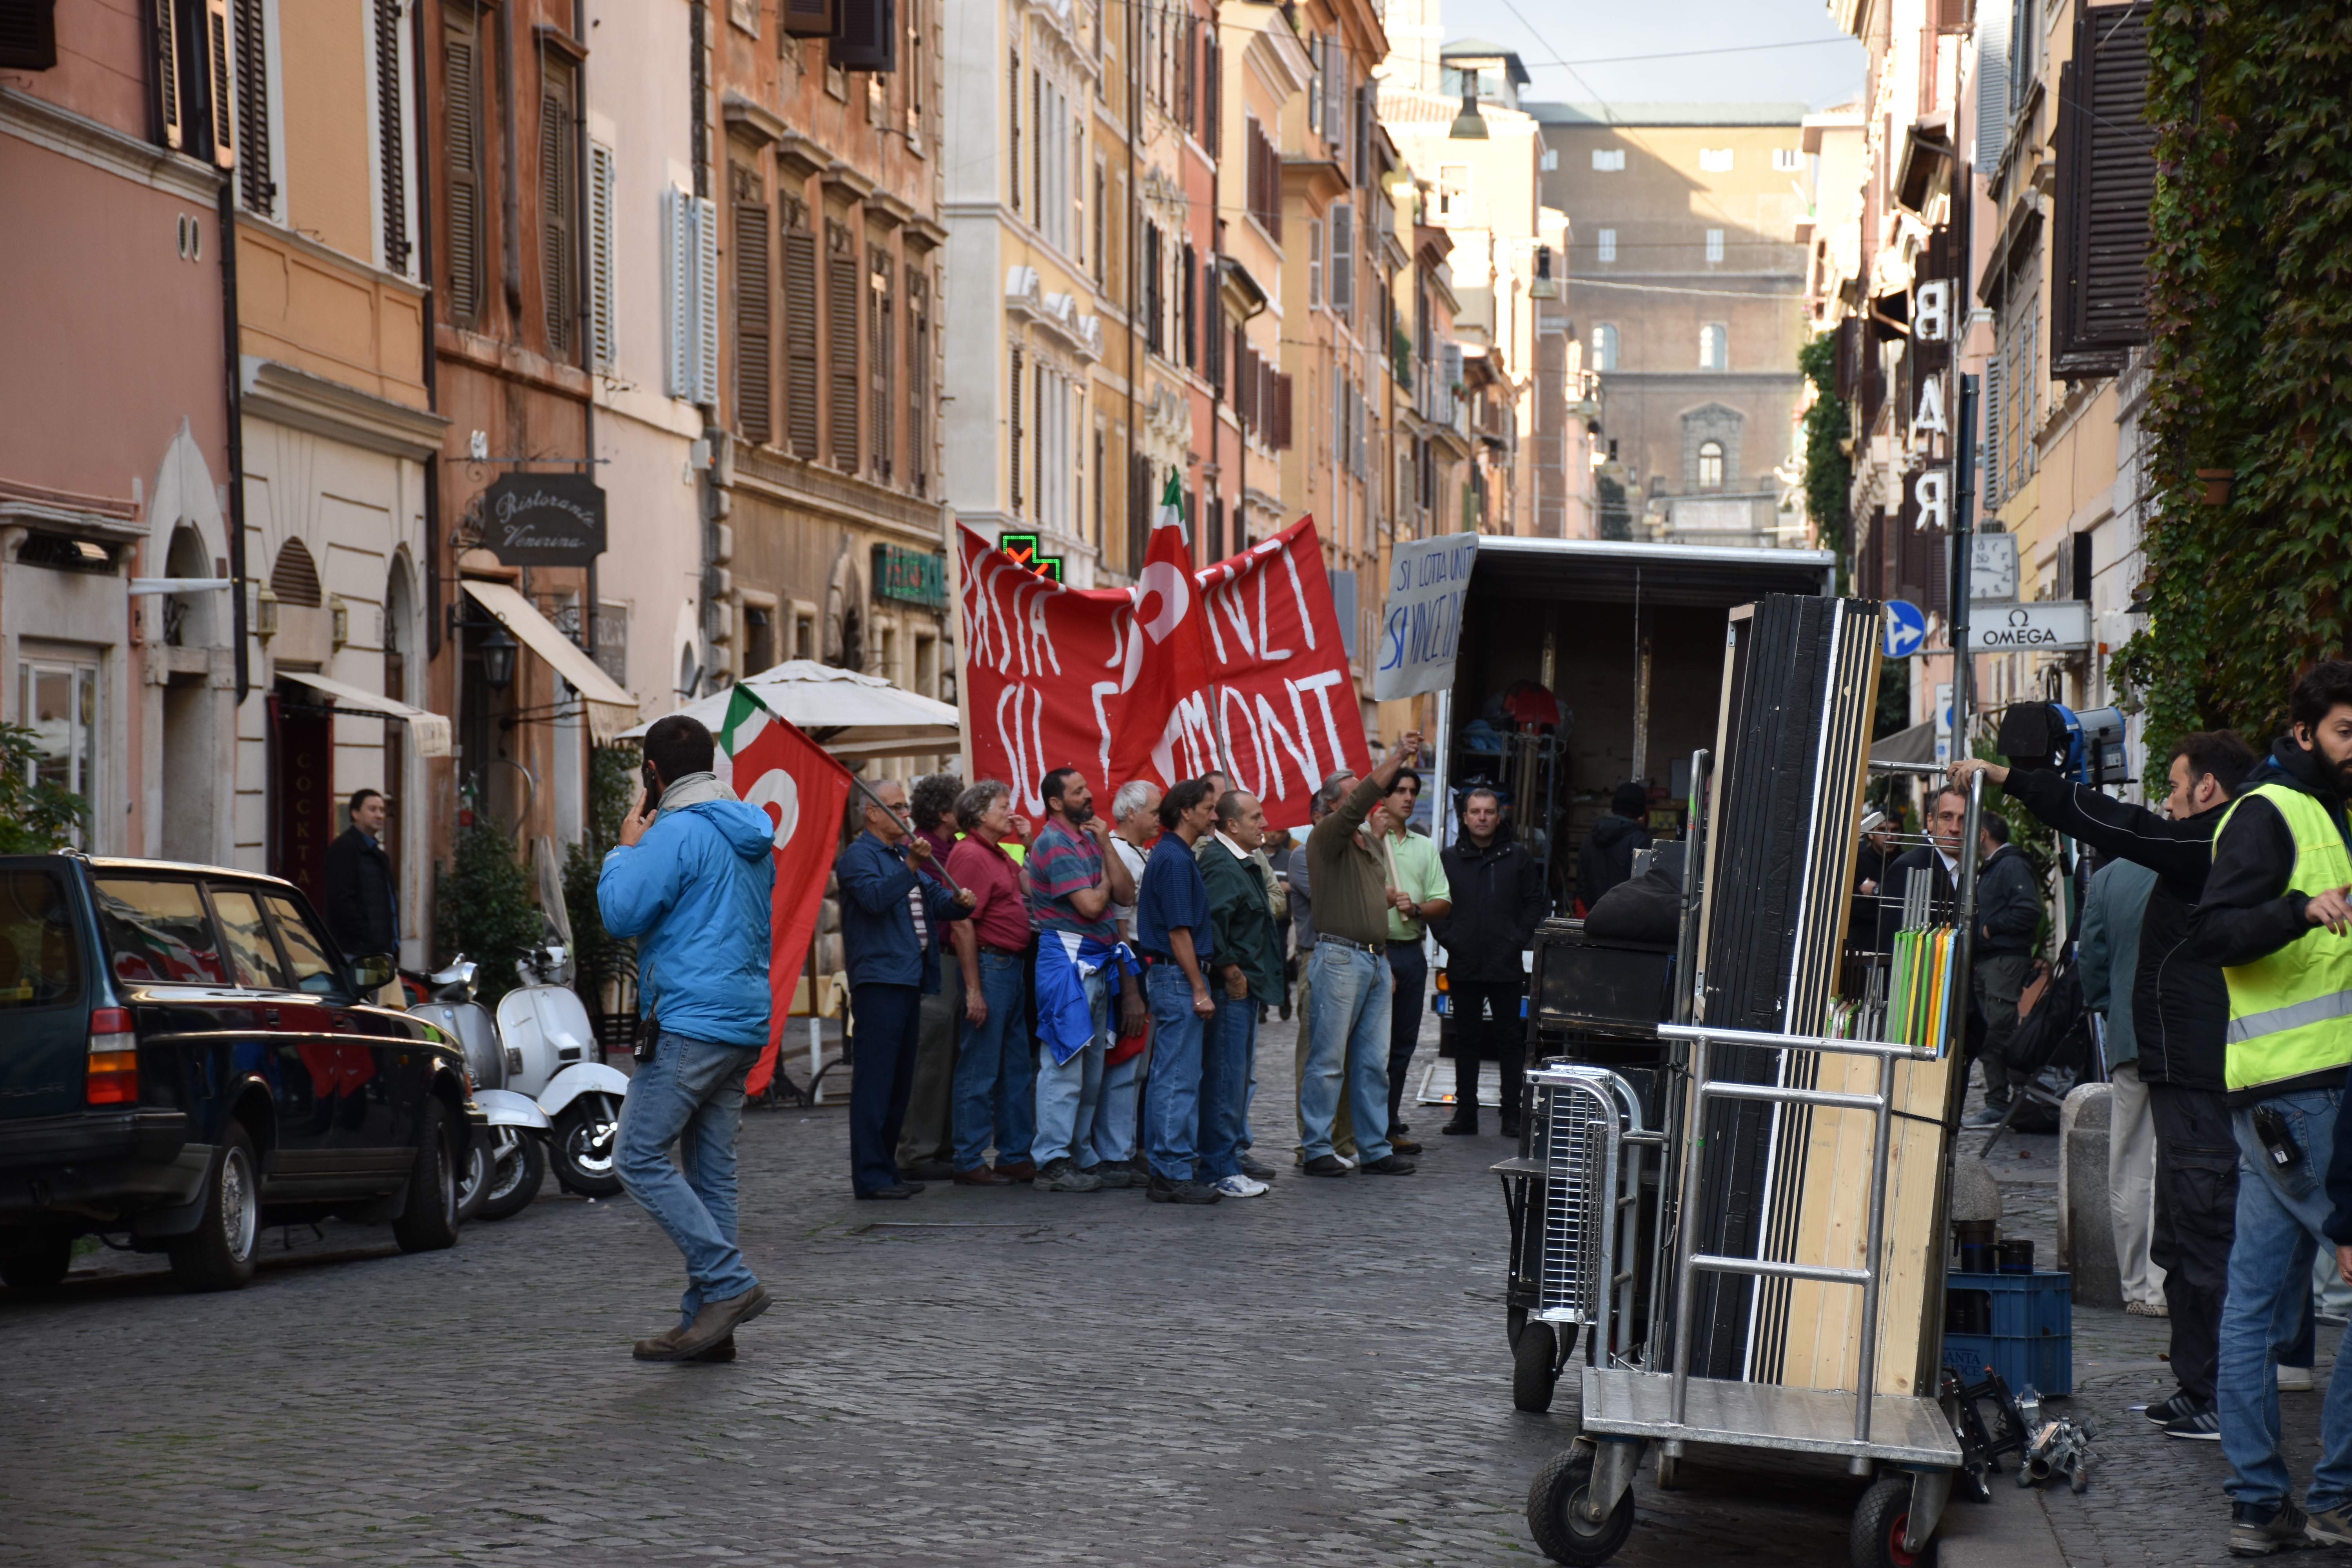 Una delle scene del film in cui viene riprodotta la protesta dei lavoratori contro Bettino Craxi